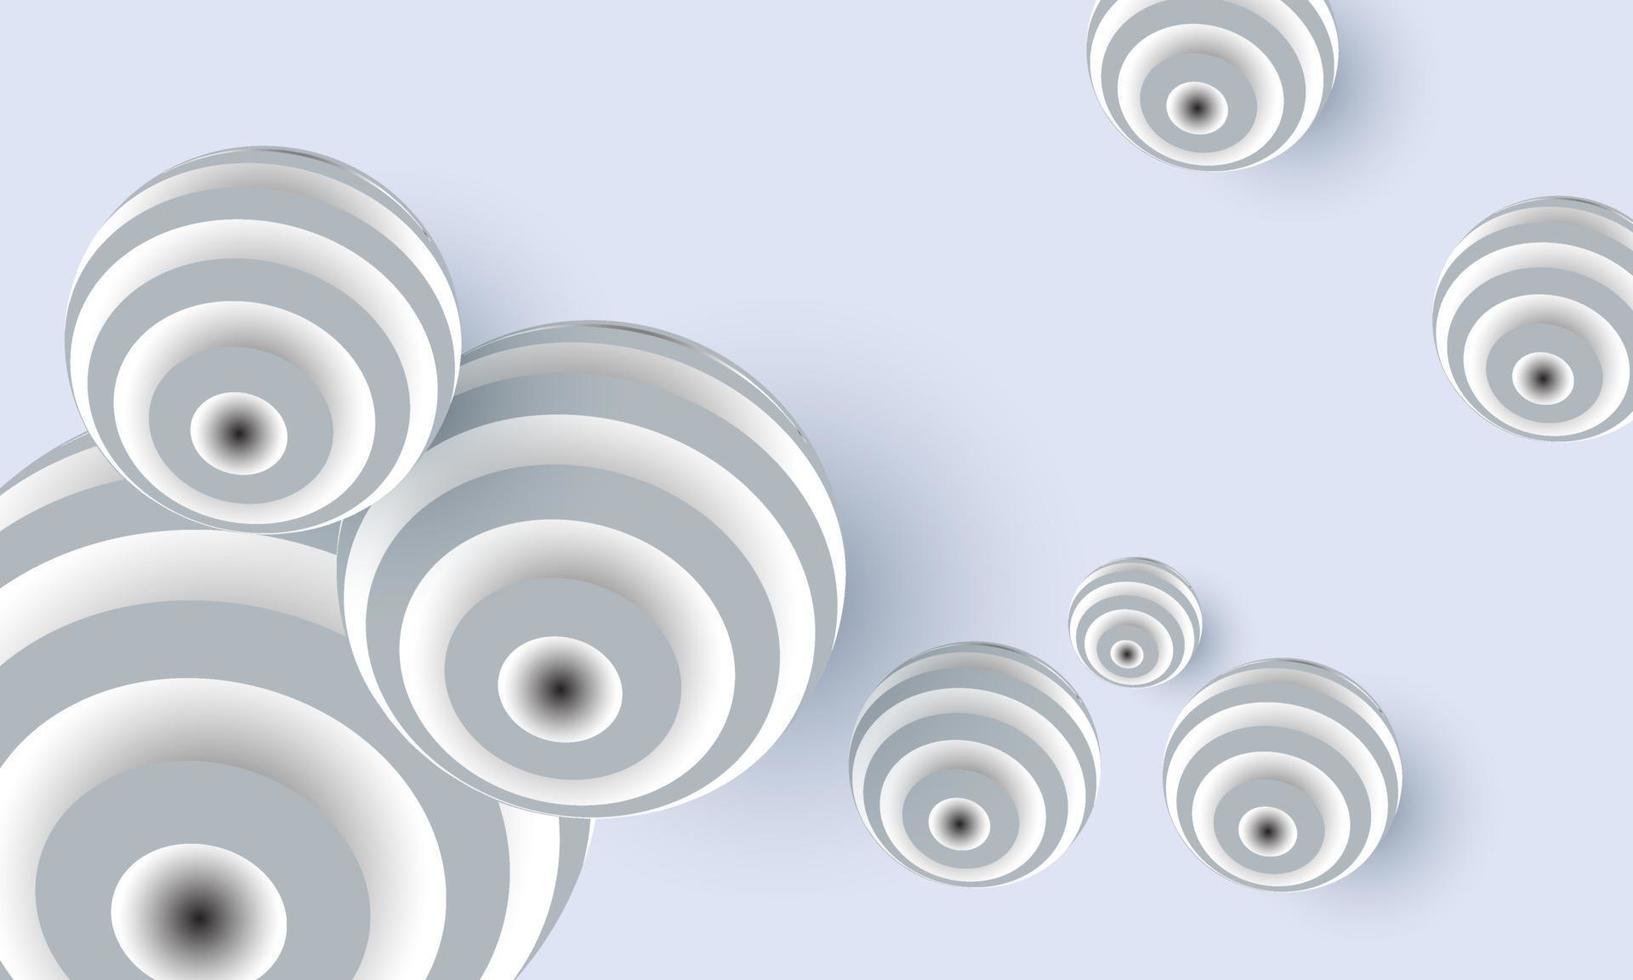 Abbildung abstrakte dynamische 3D-Kugeln weiß auf Hintergrund isoliert vektor